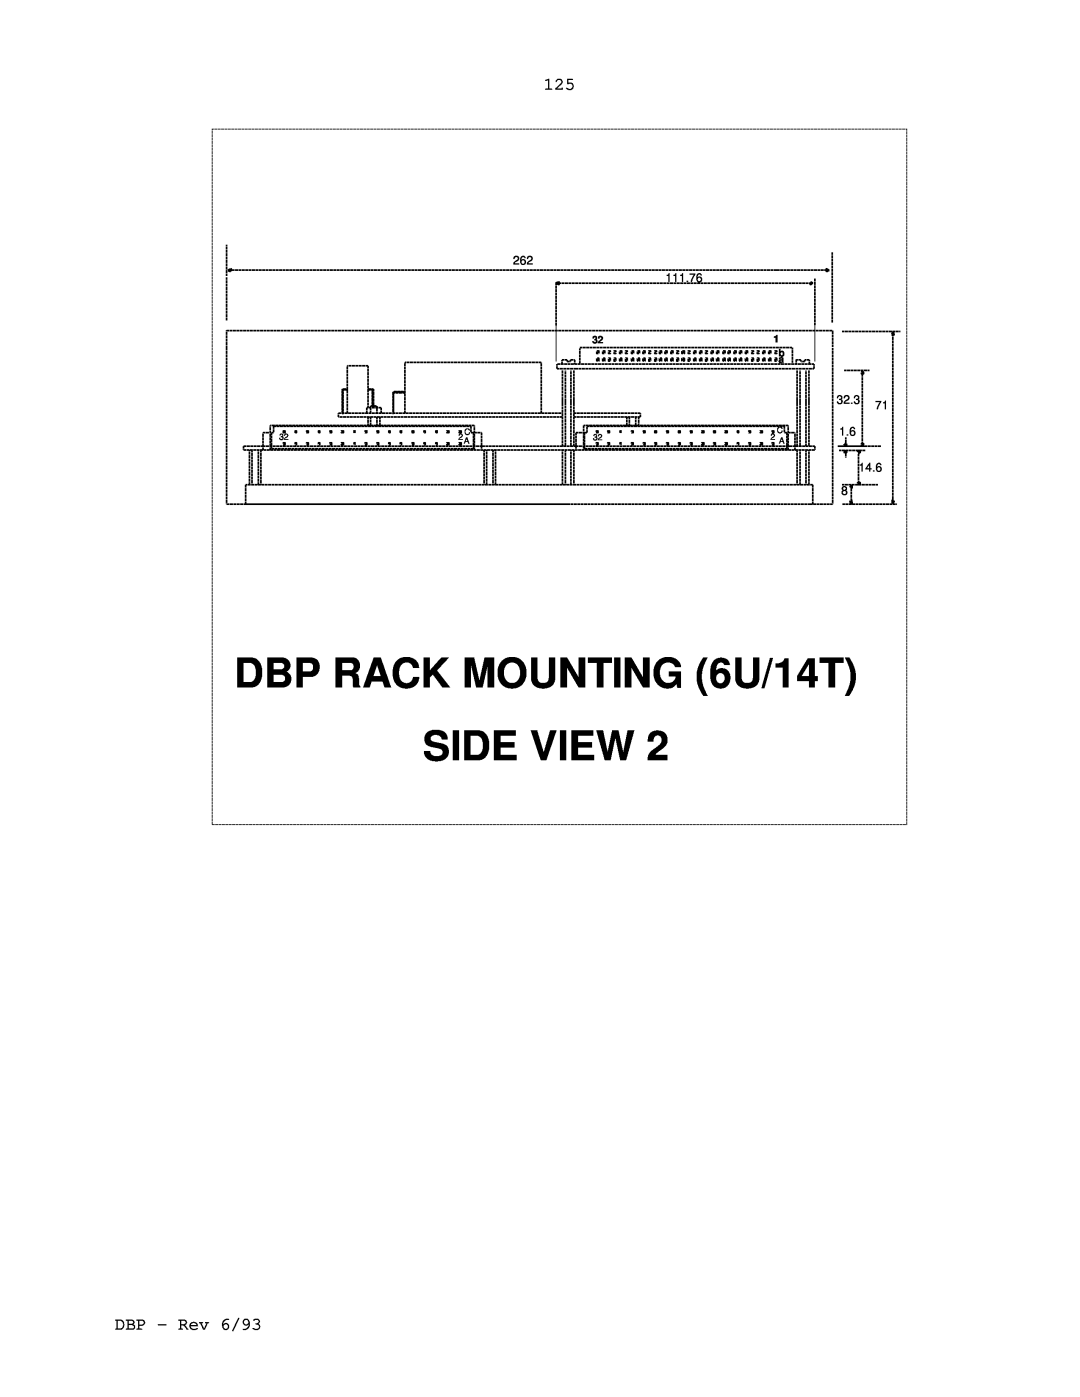 Elmo DBP SERIES manual DBP RACK MOUNTING 6U/14T, Side View 